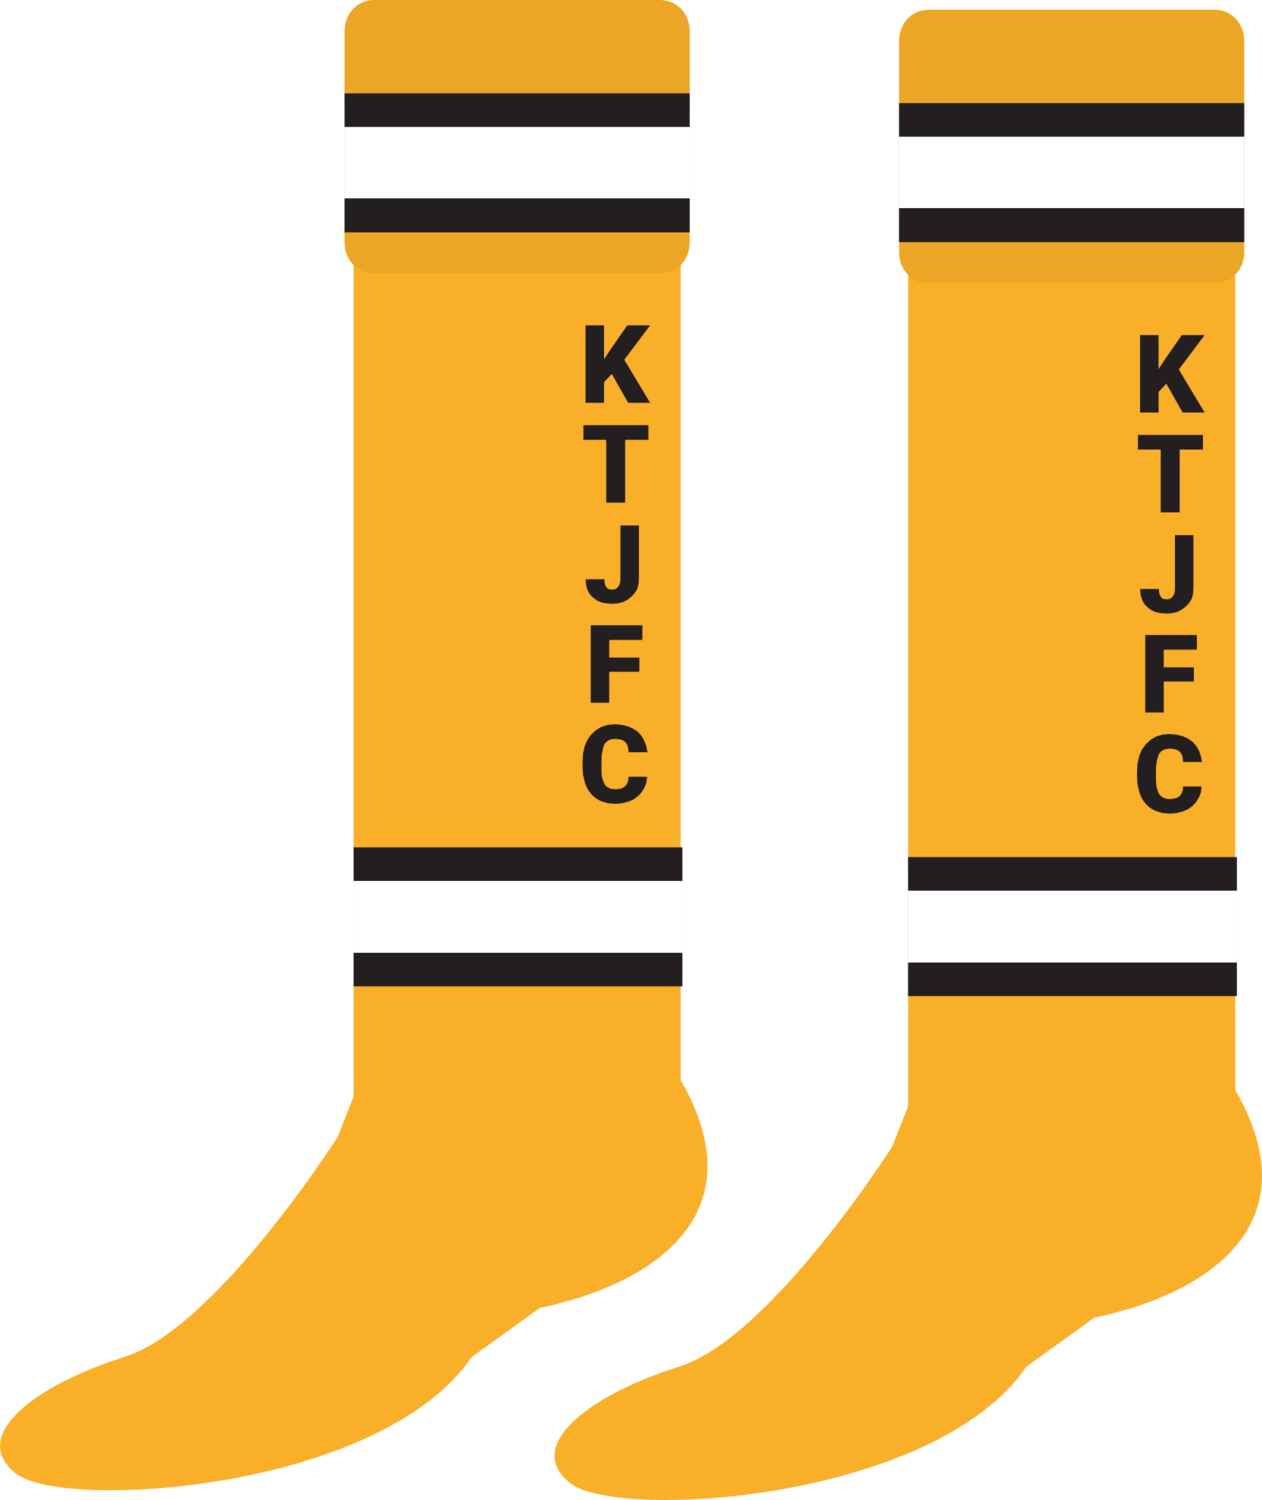 KTJFC - Bespoke Club Socks (kids)